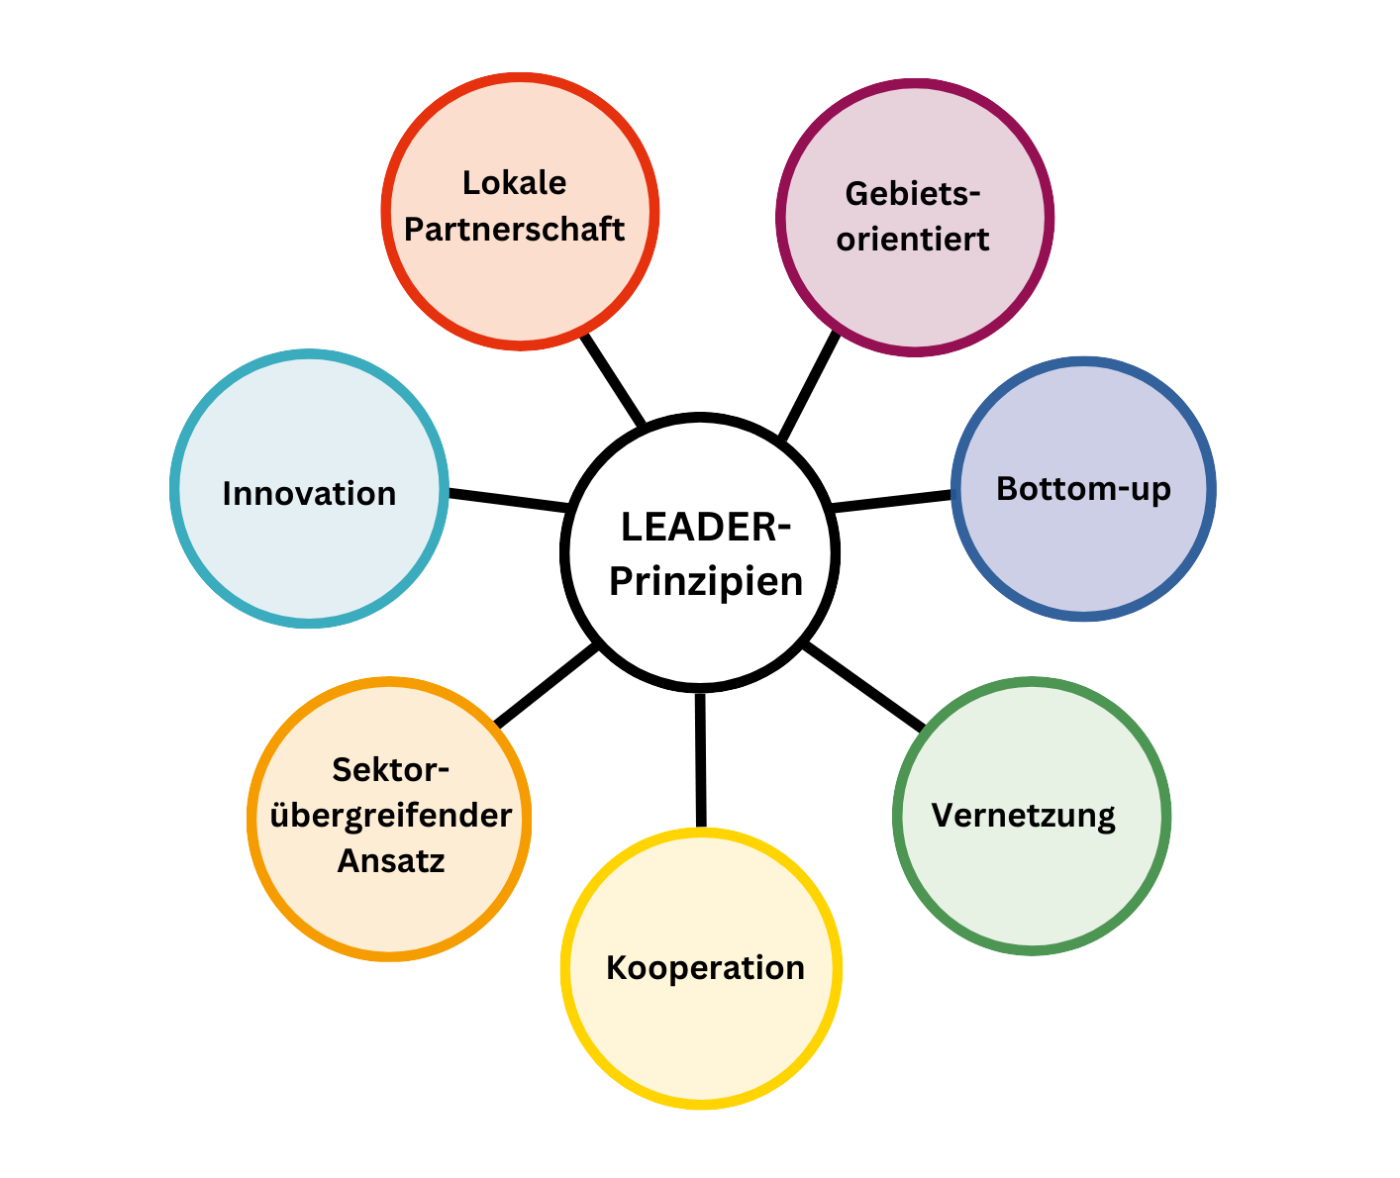 Grafische Darstellung der 7 LEADER-Prinzipien: Lokale Partnerschaft, Gebietsorientiert, Bottom-Up, Vernetzung, Kooperation, Sektorübergreifender Ansatz, Innovation 